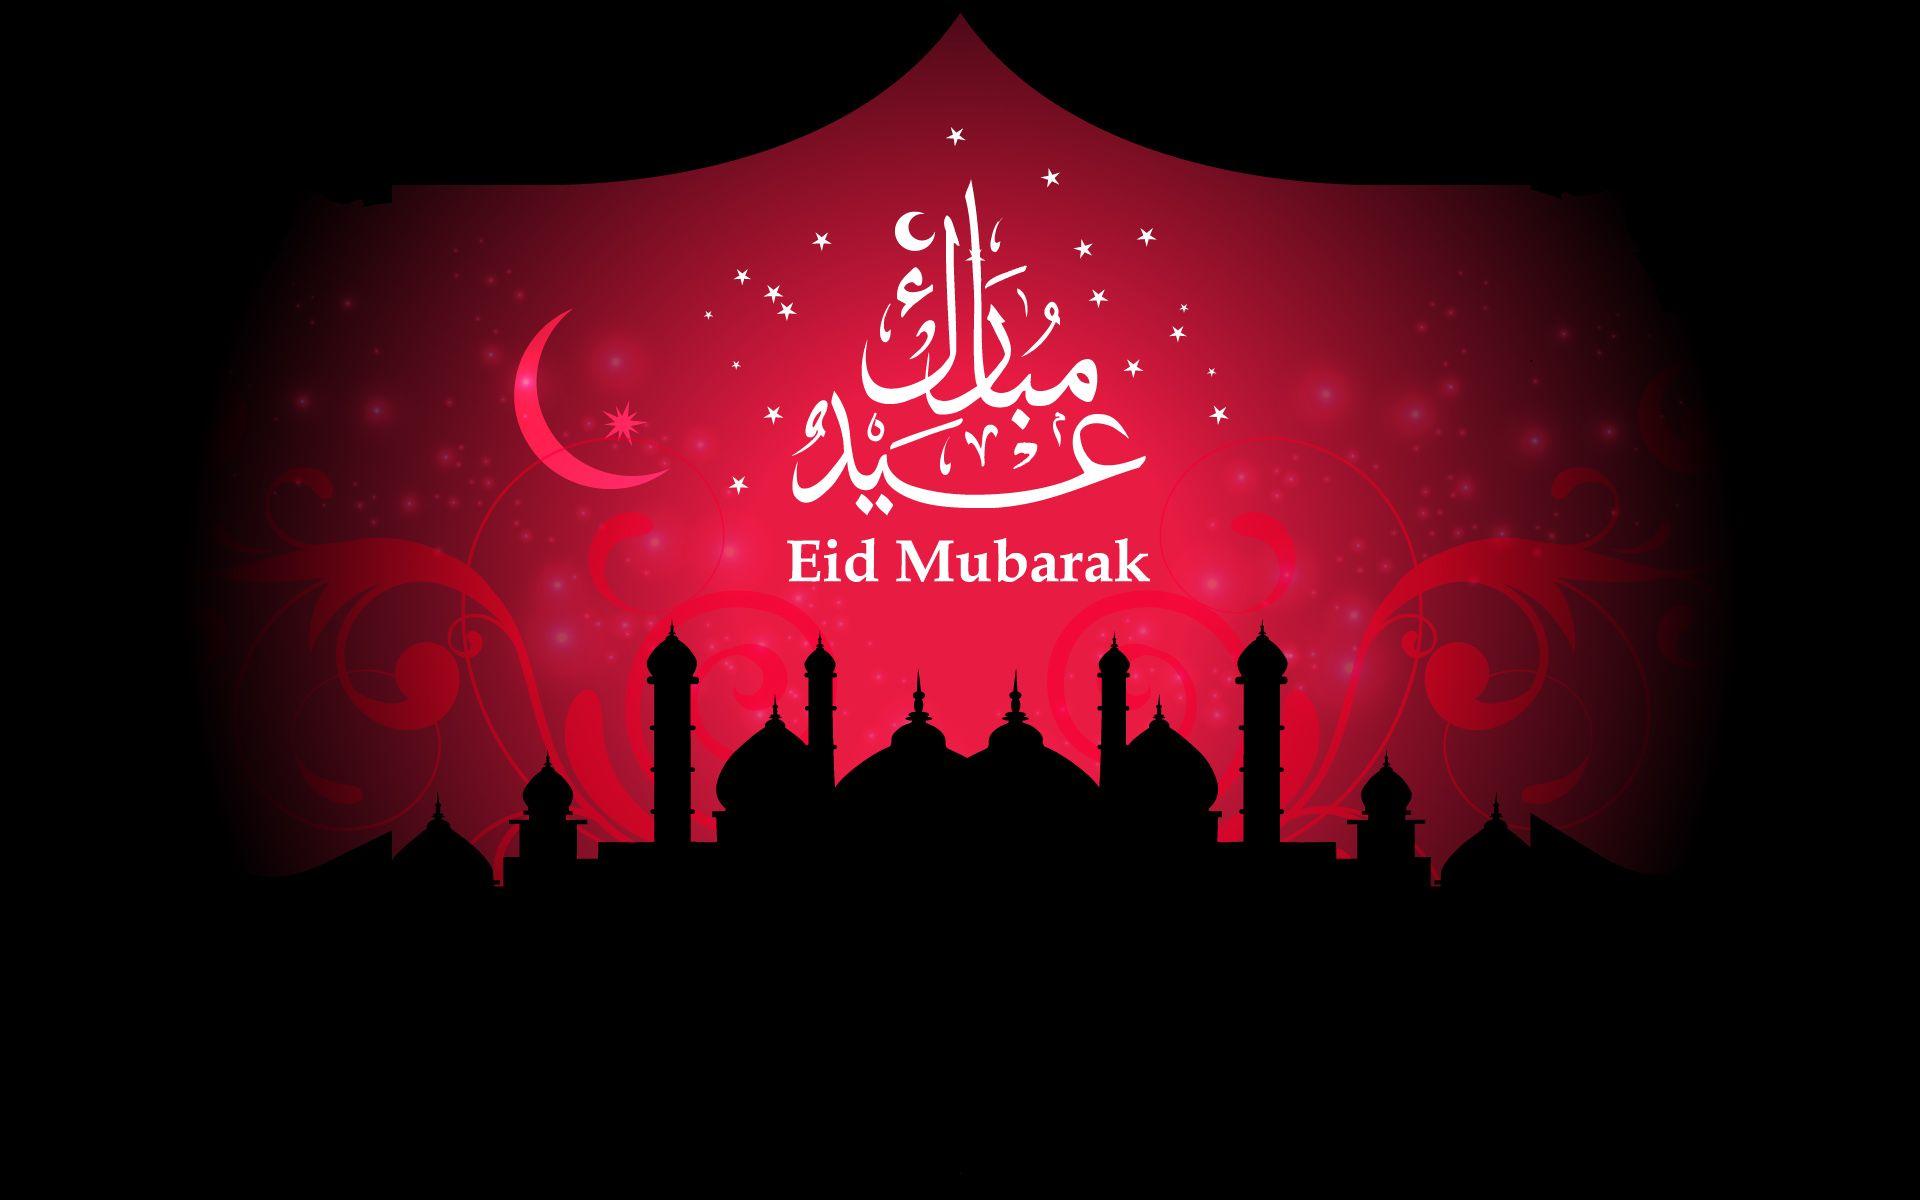 Trong thời gian Ramadan Eid, hãy làm mới cho chiếc điện thoại của bạn với những hình nền tuyệt đẹp dành cho ngày lễ thật ấn tượng, thể hiện tinh thần đoàn kết và sự thống nhất giữa các quốc gia Hồi giáo trên toàn thế giới.